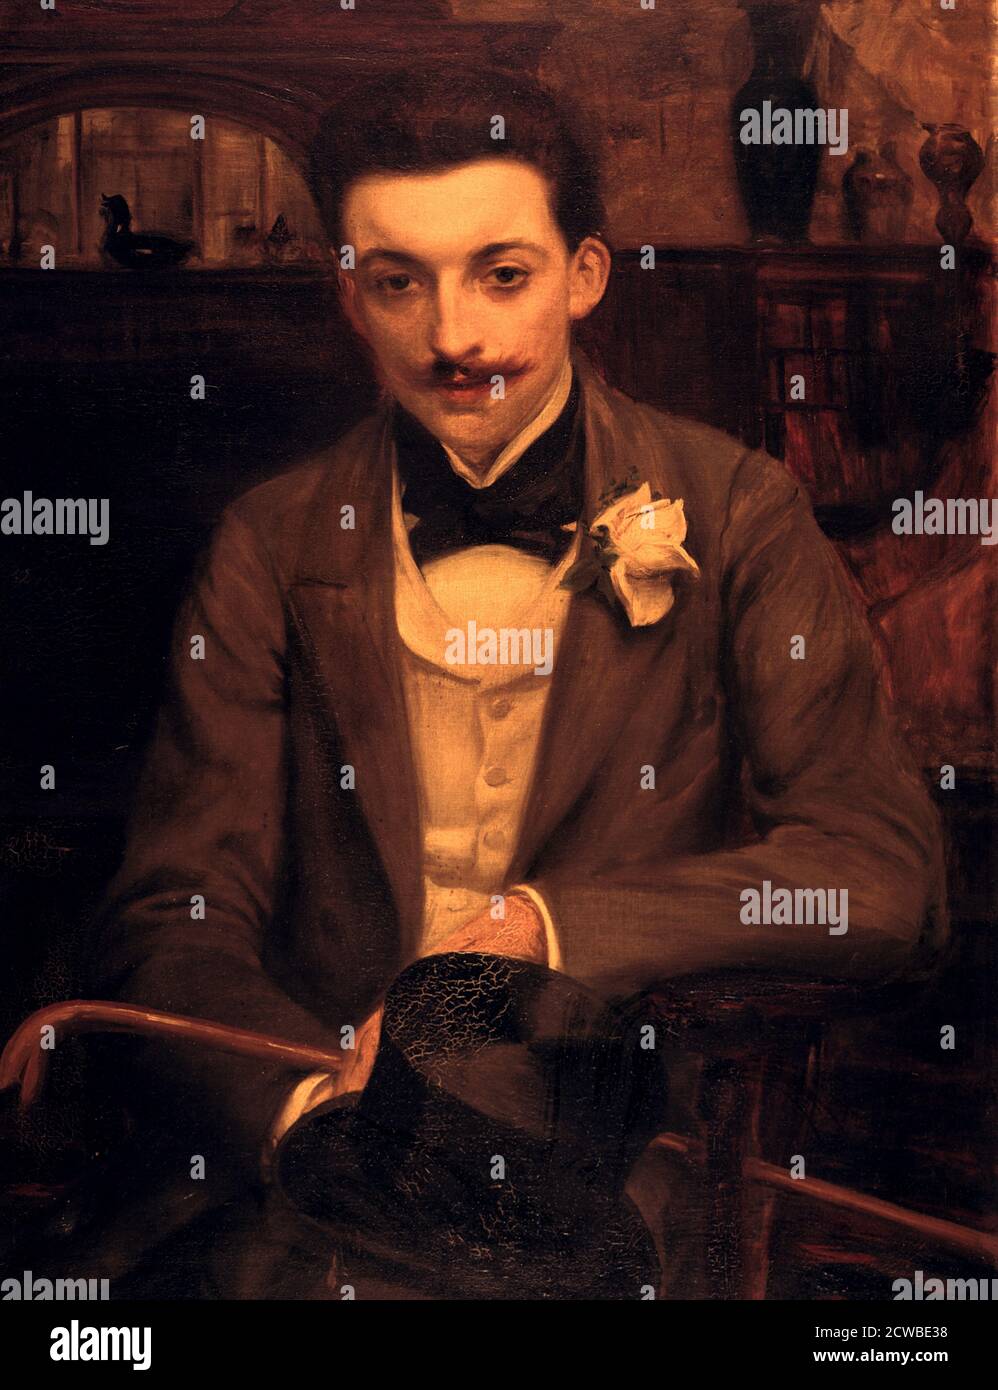 Portrait de P. Louys, 1861-1942 par artiste : Jacques Emile Blanche. Blanche était un artiste très populaire de son époque. Il est influencé par Tissot, Sargent et Edouard Manet. Banque D'Images